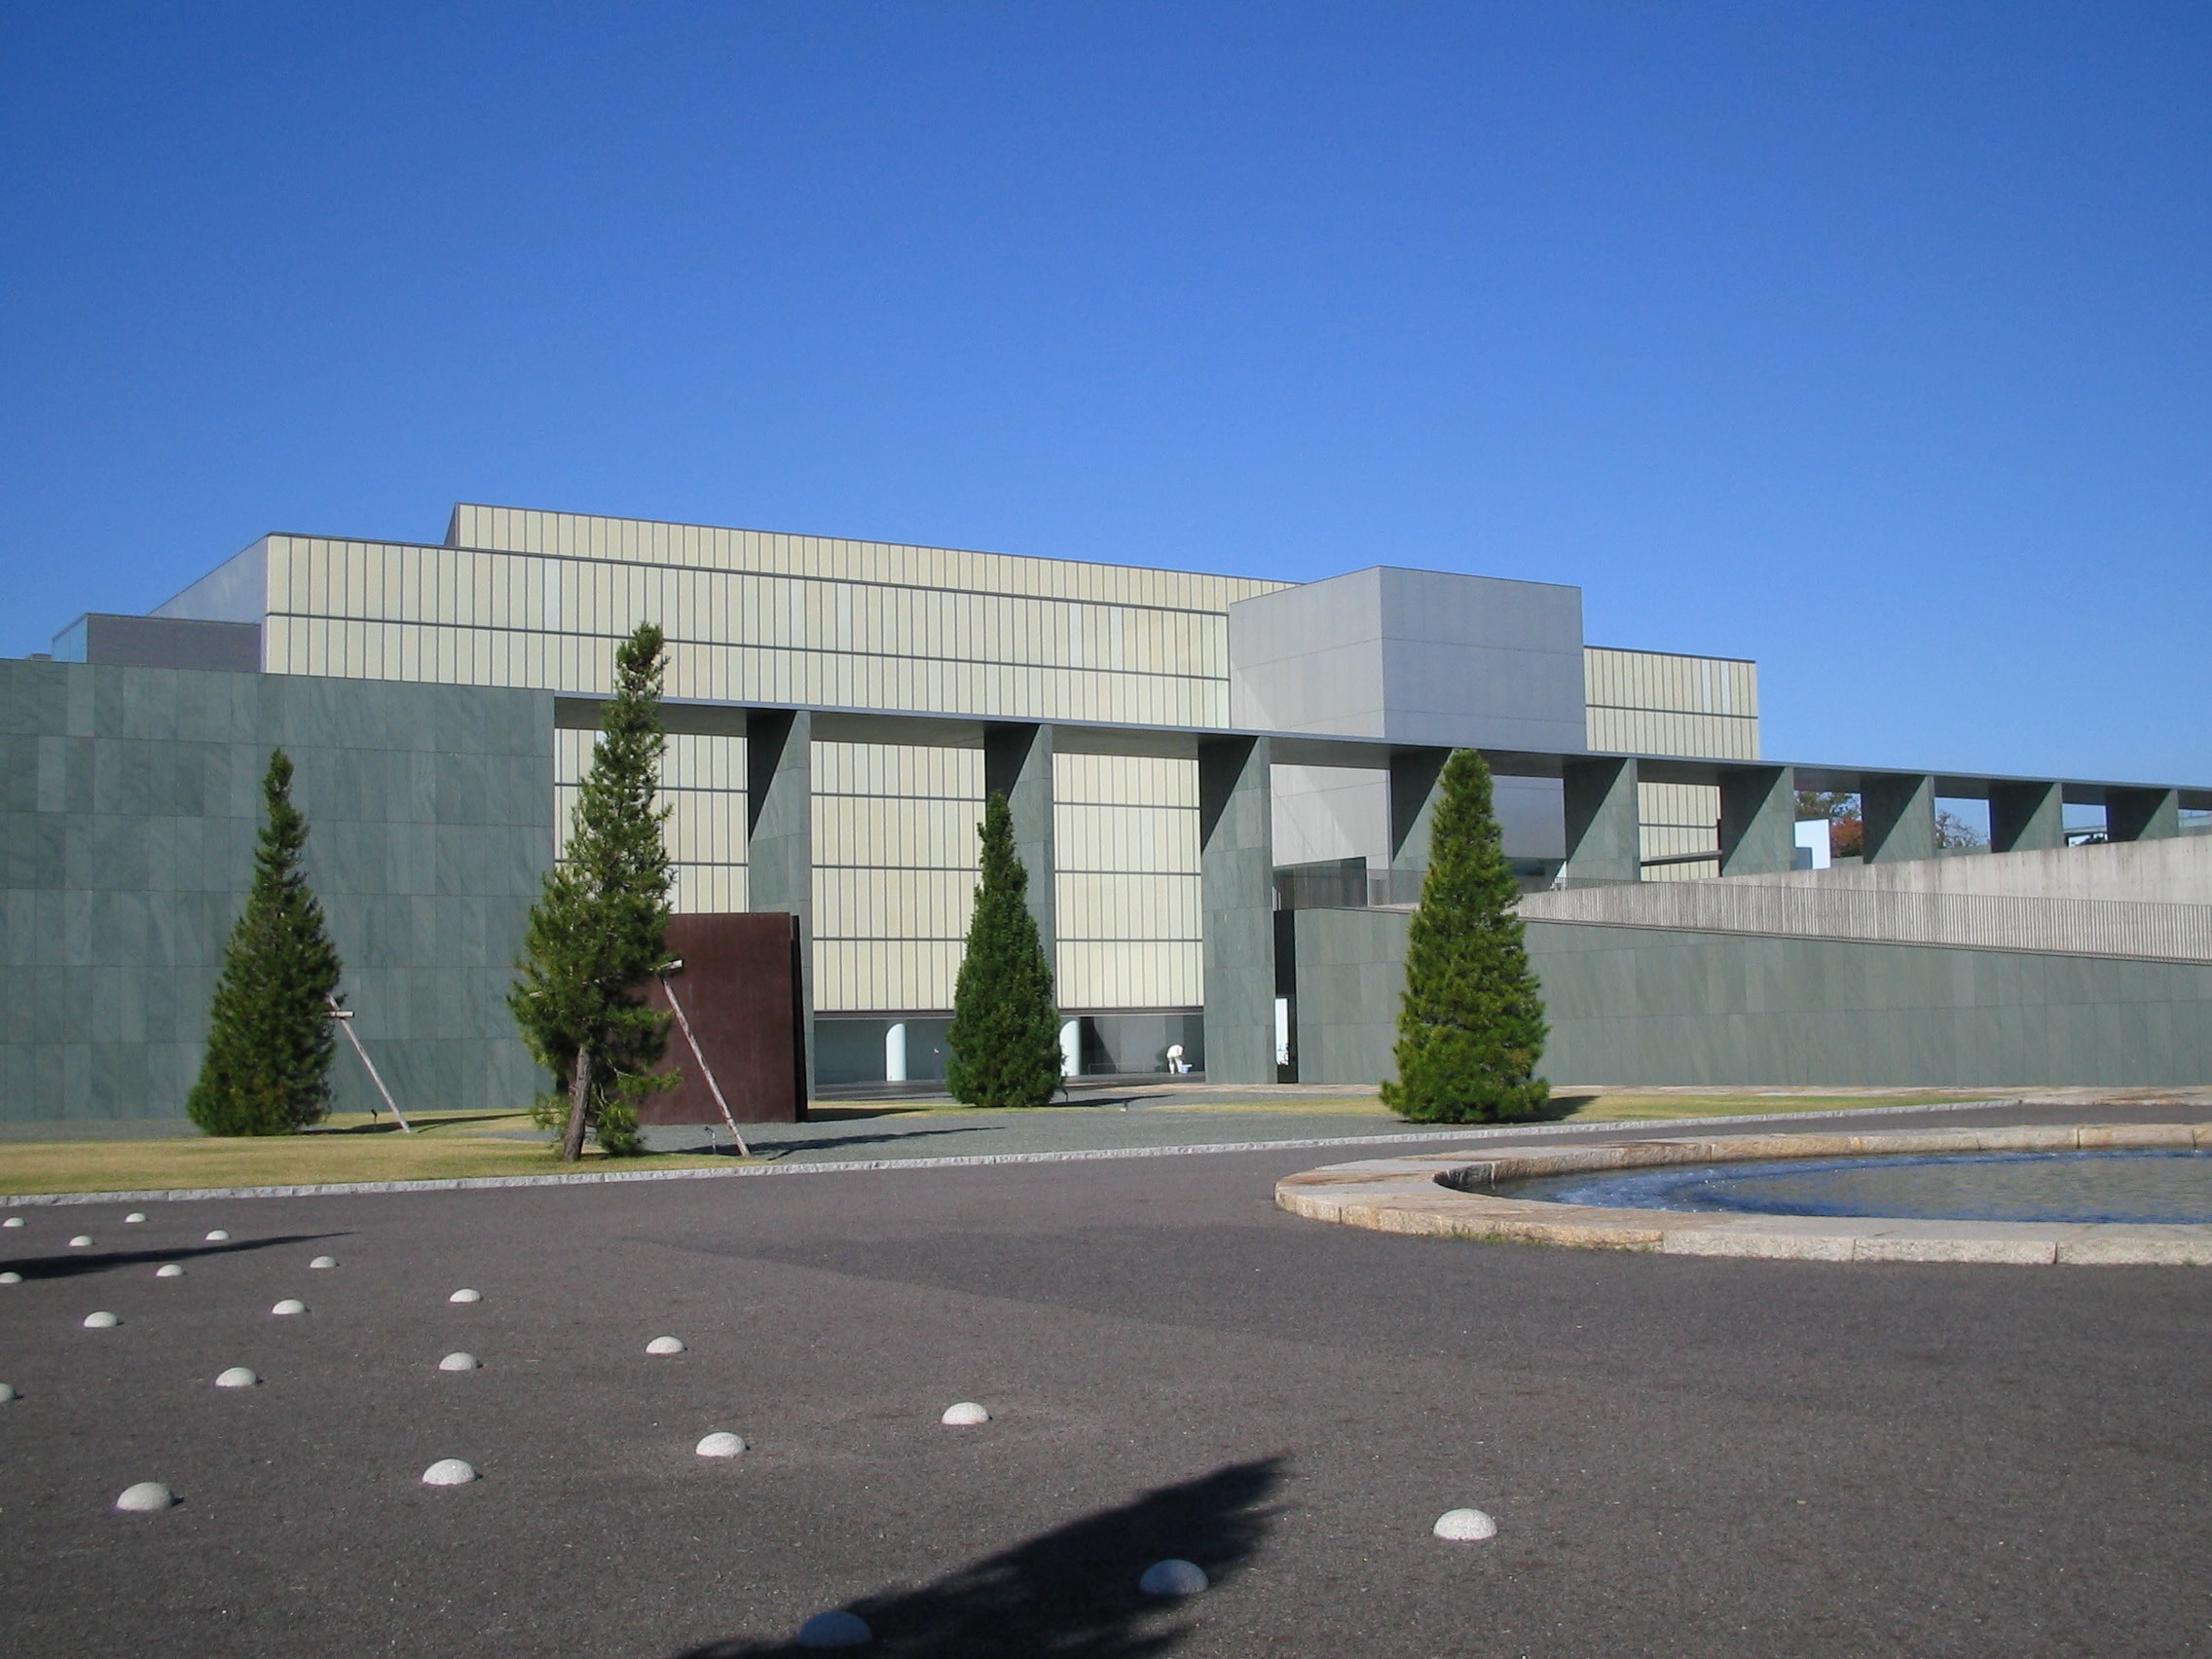 豊田市美術館は、1995年に開館した比較的新しい美術館